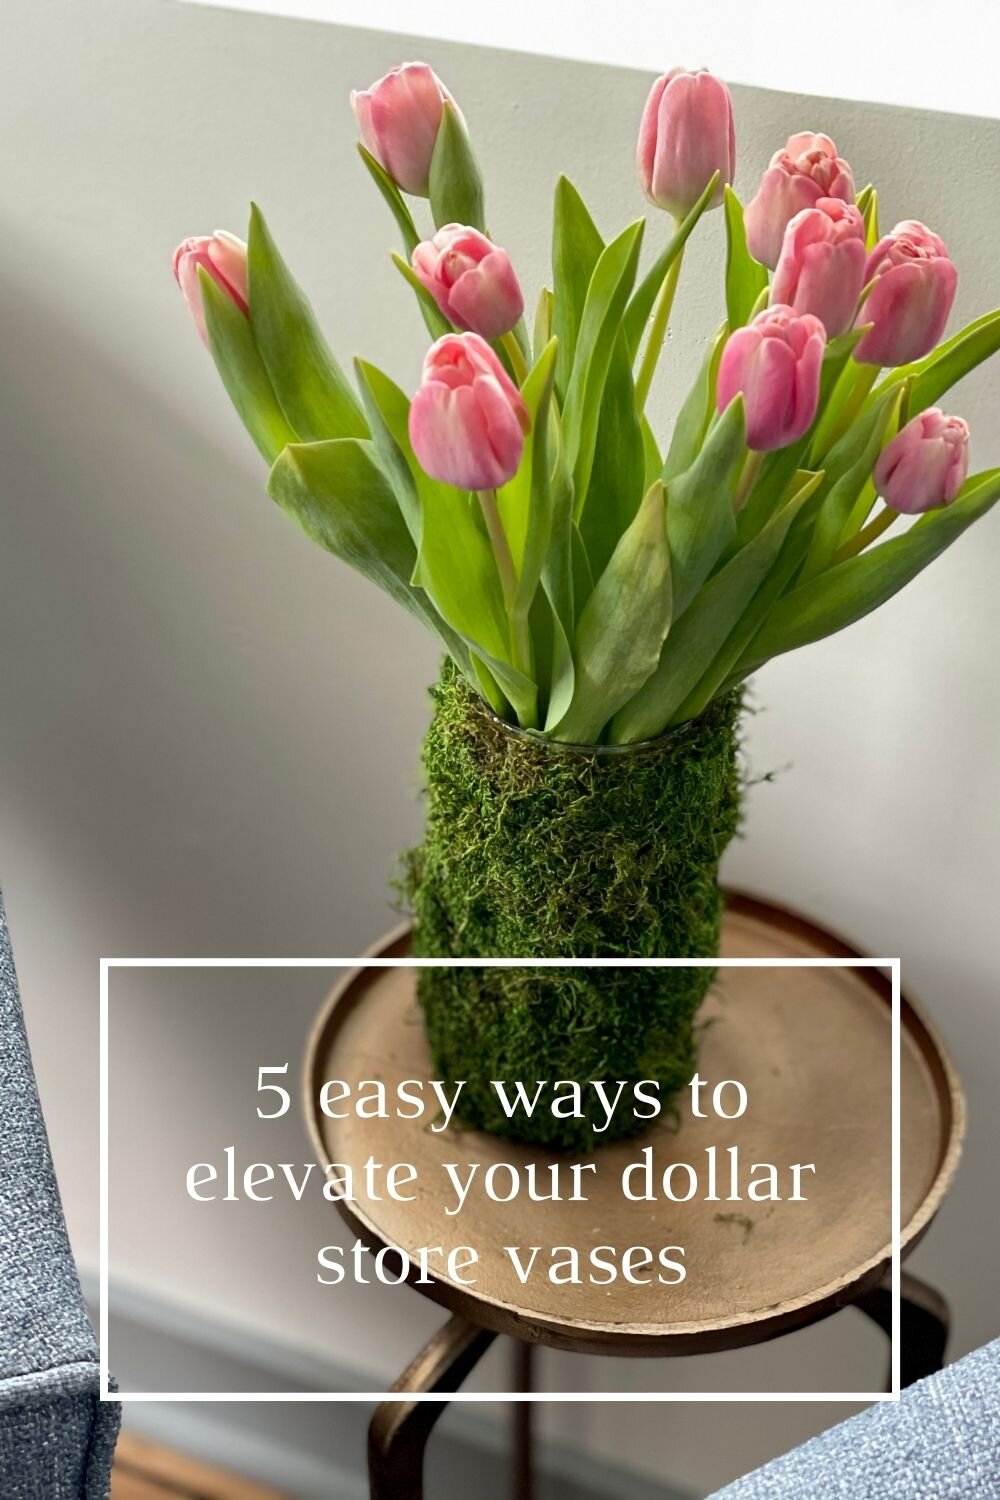 5 easy ways to elevate dollar store vases.jpg